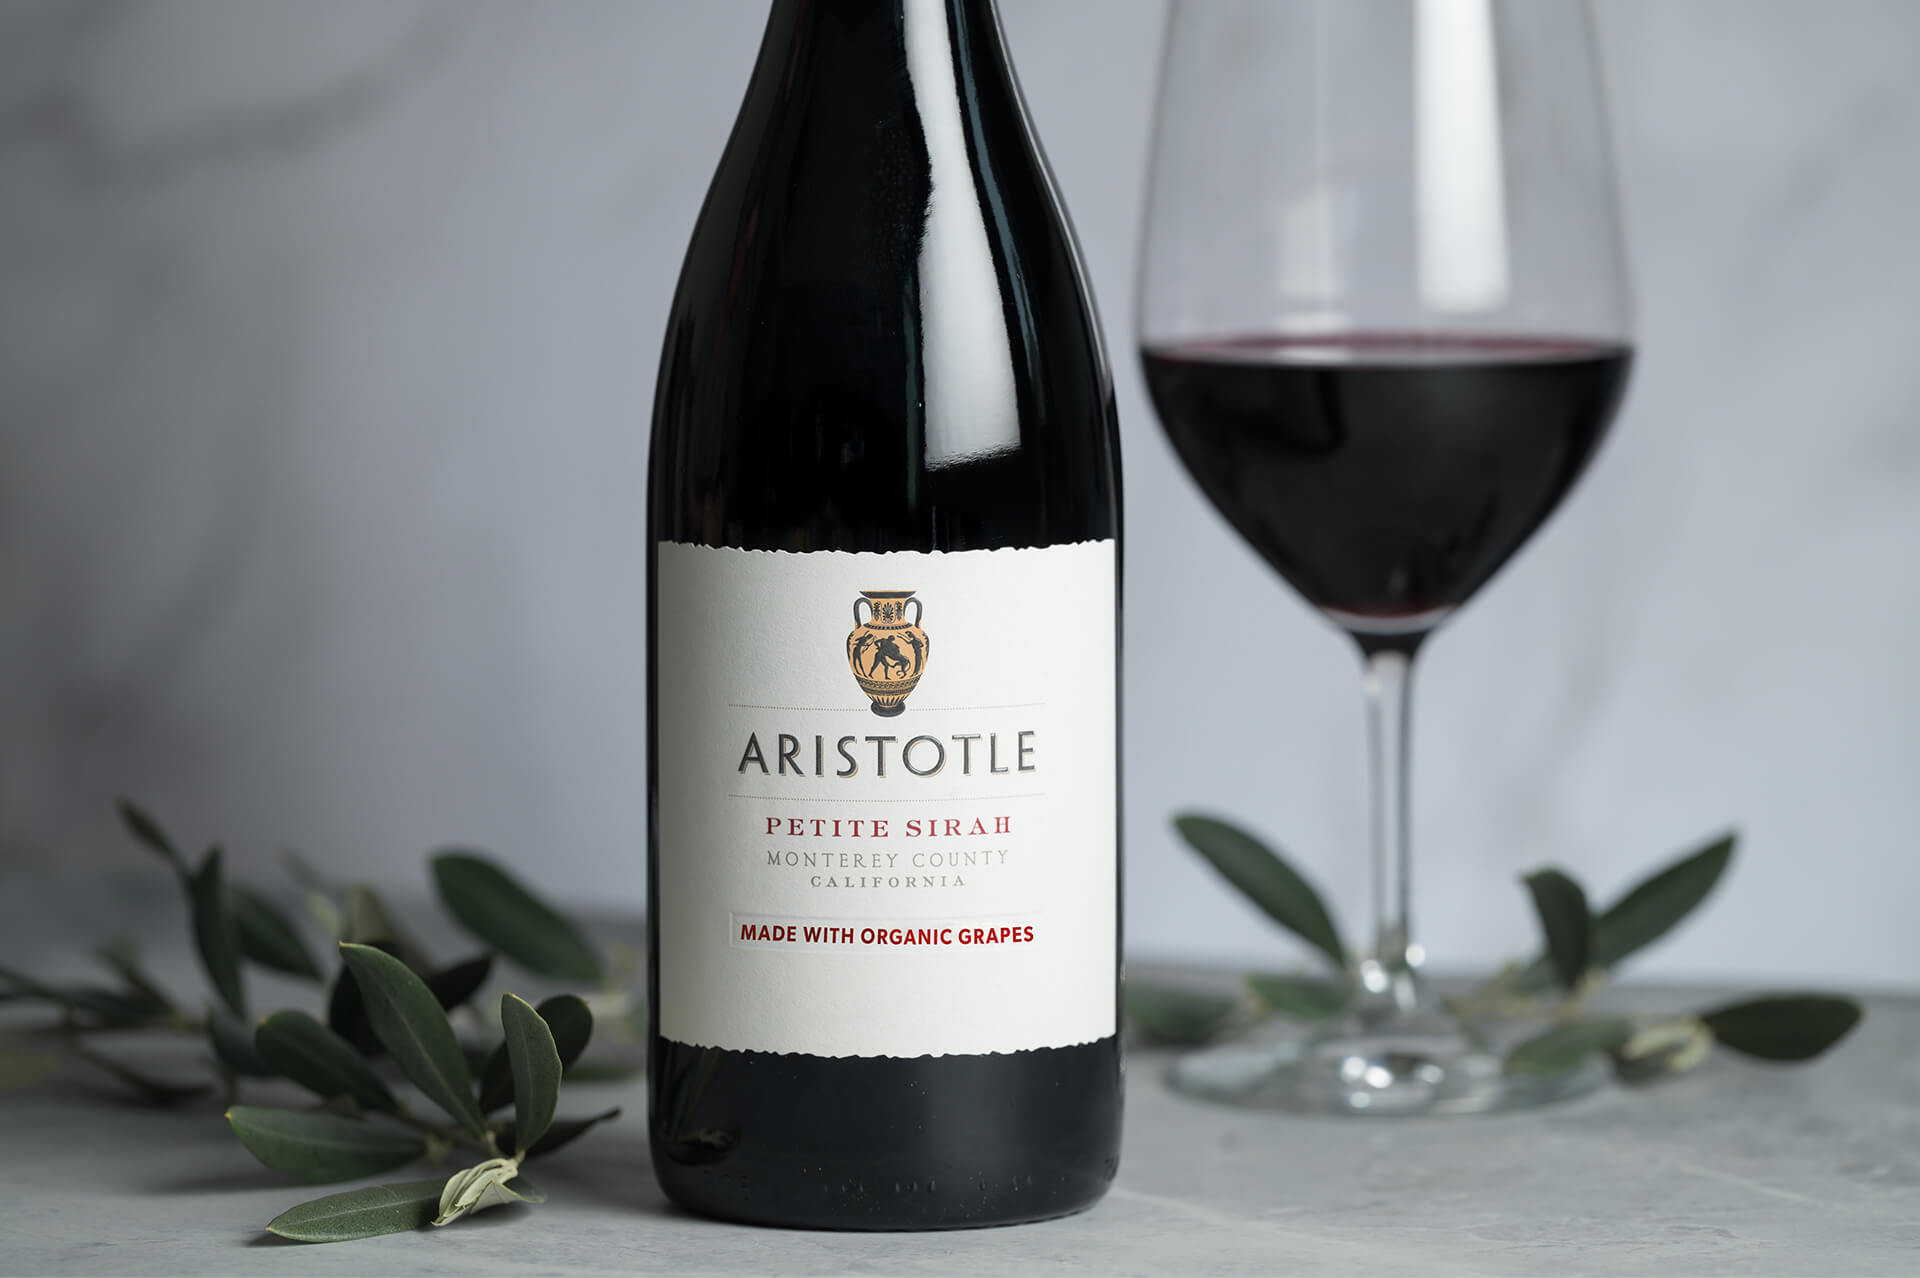 Aristotle Wine bottle closeup of label